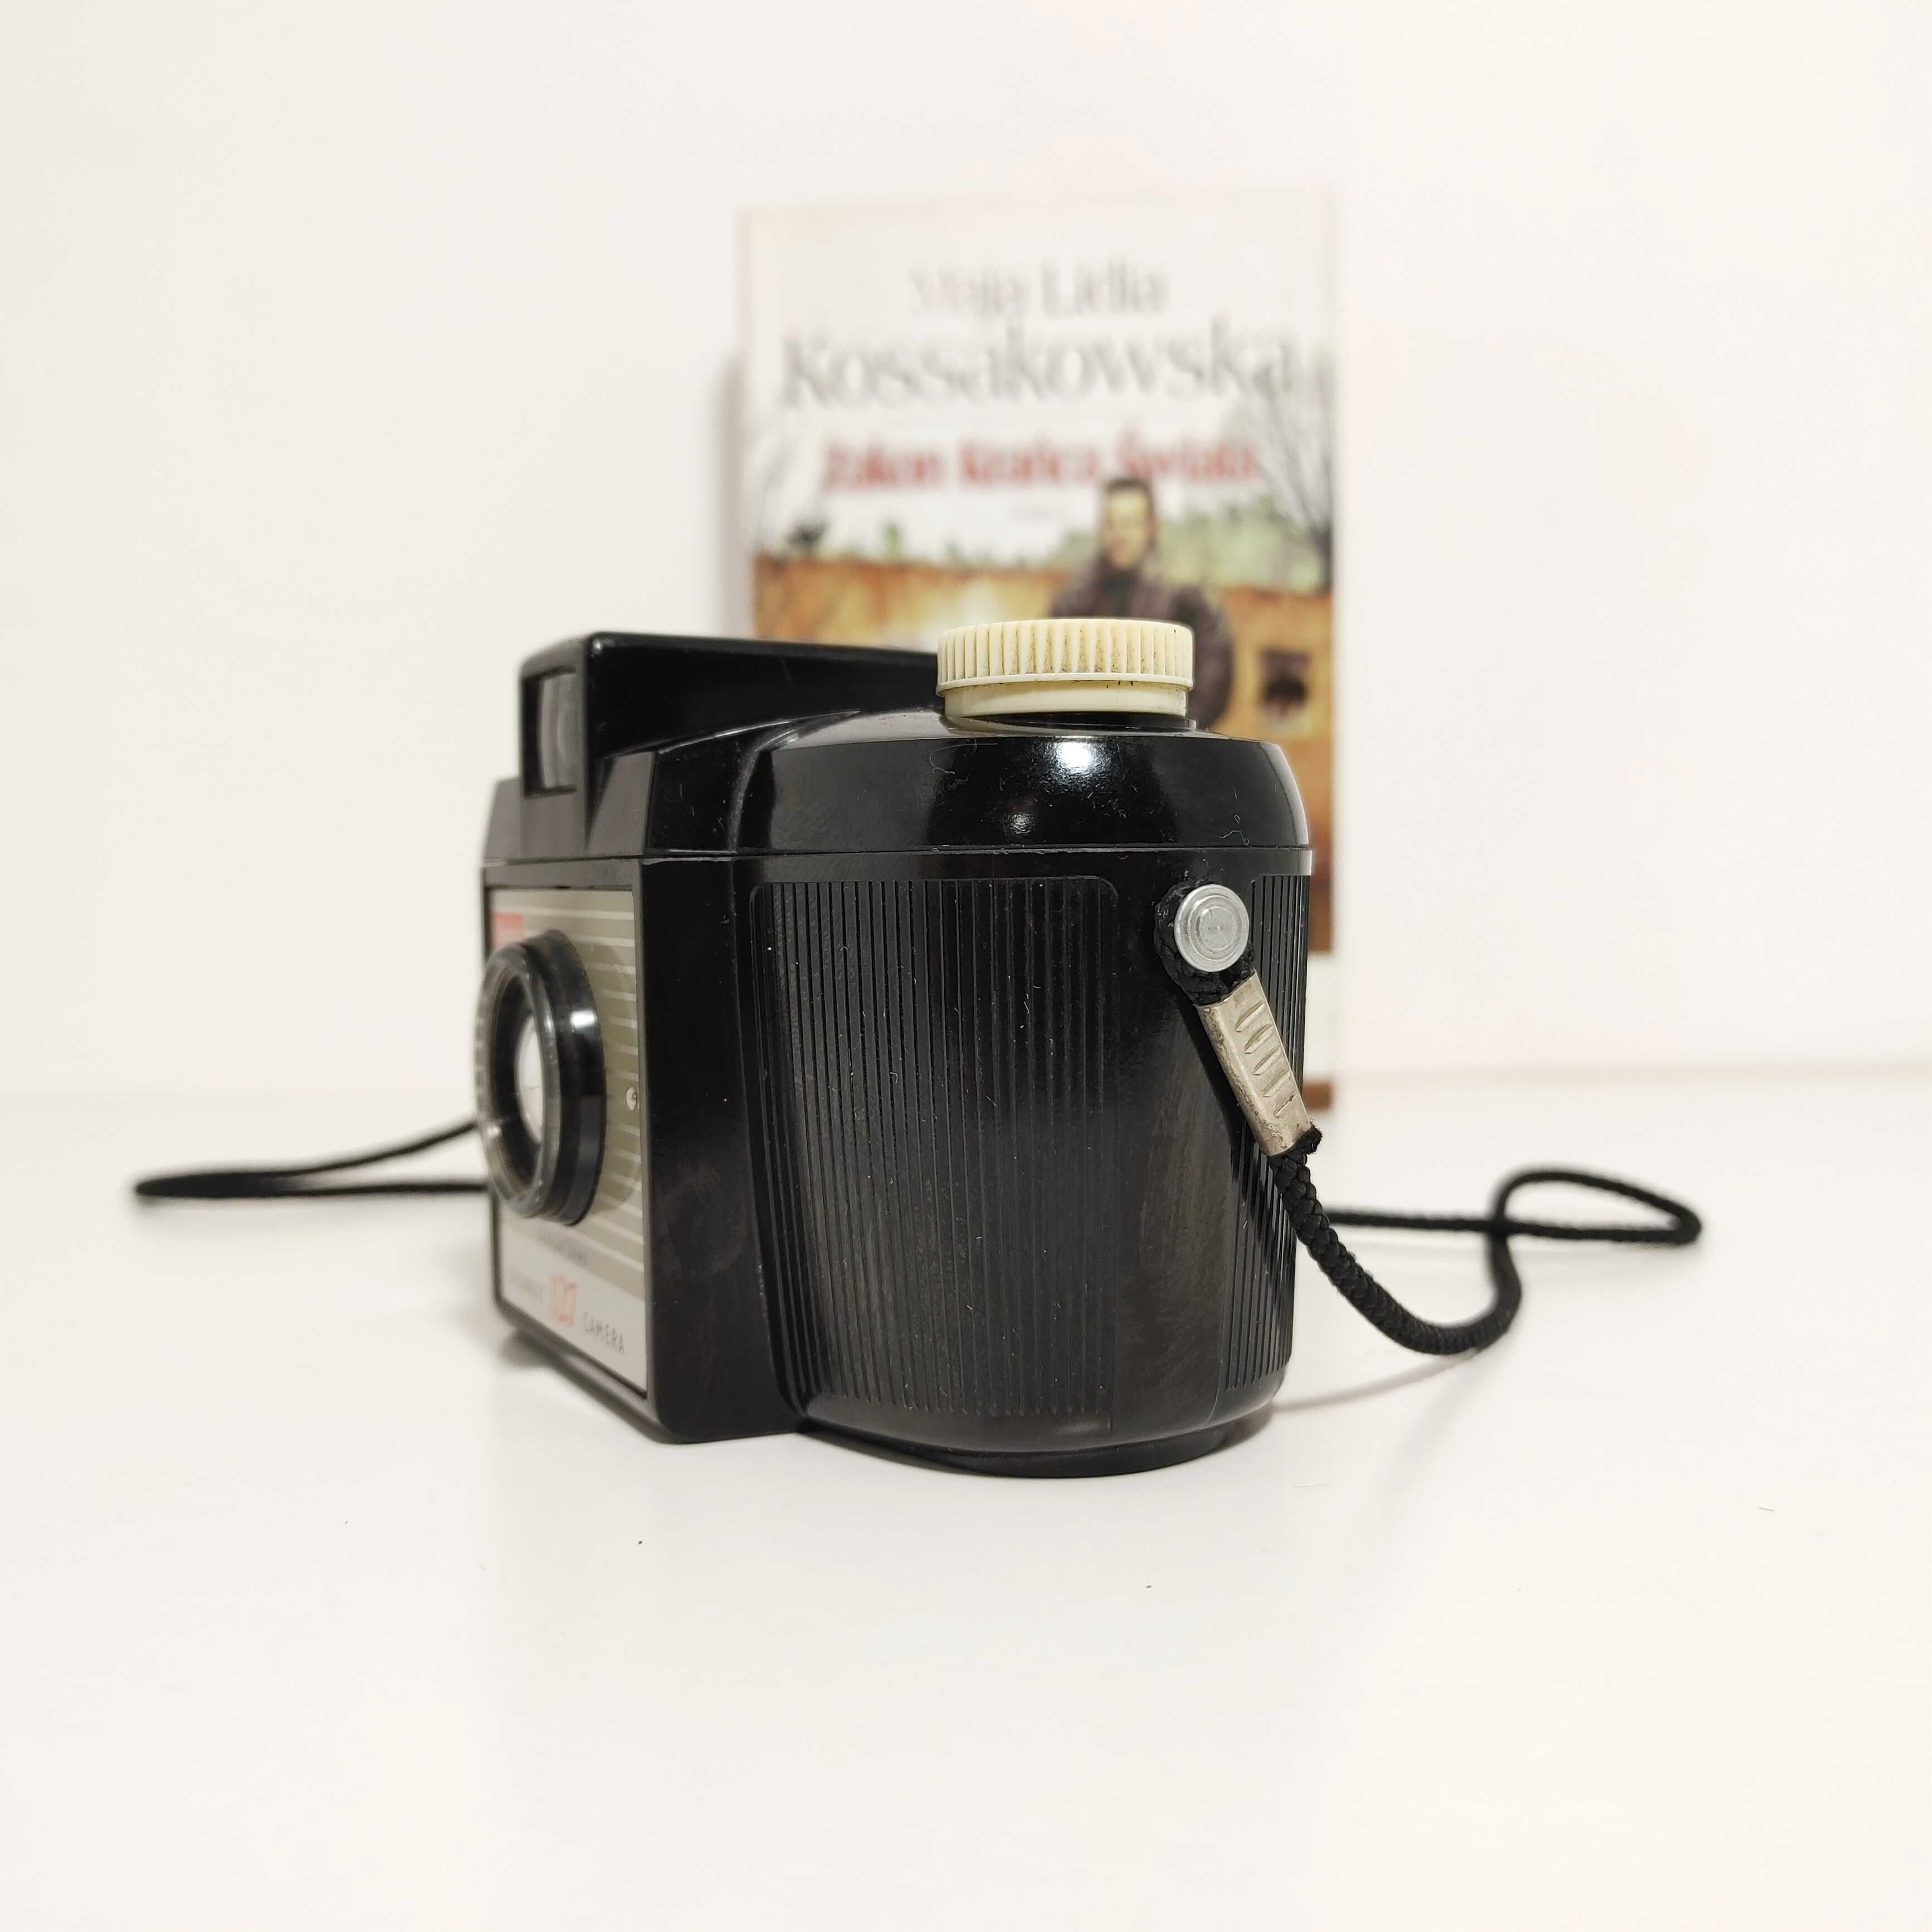 Aparat fotograficzny z 1952 roku Kodak Brownie 127 - Box camera